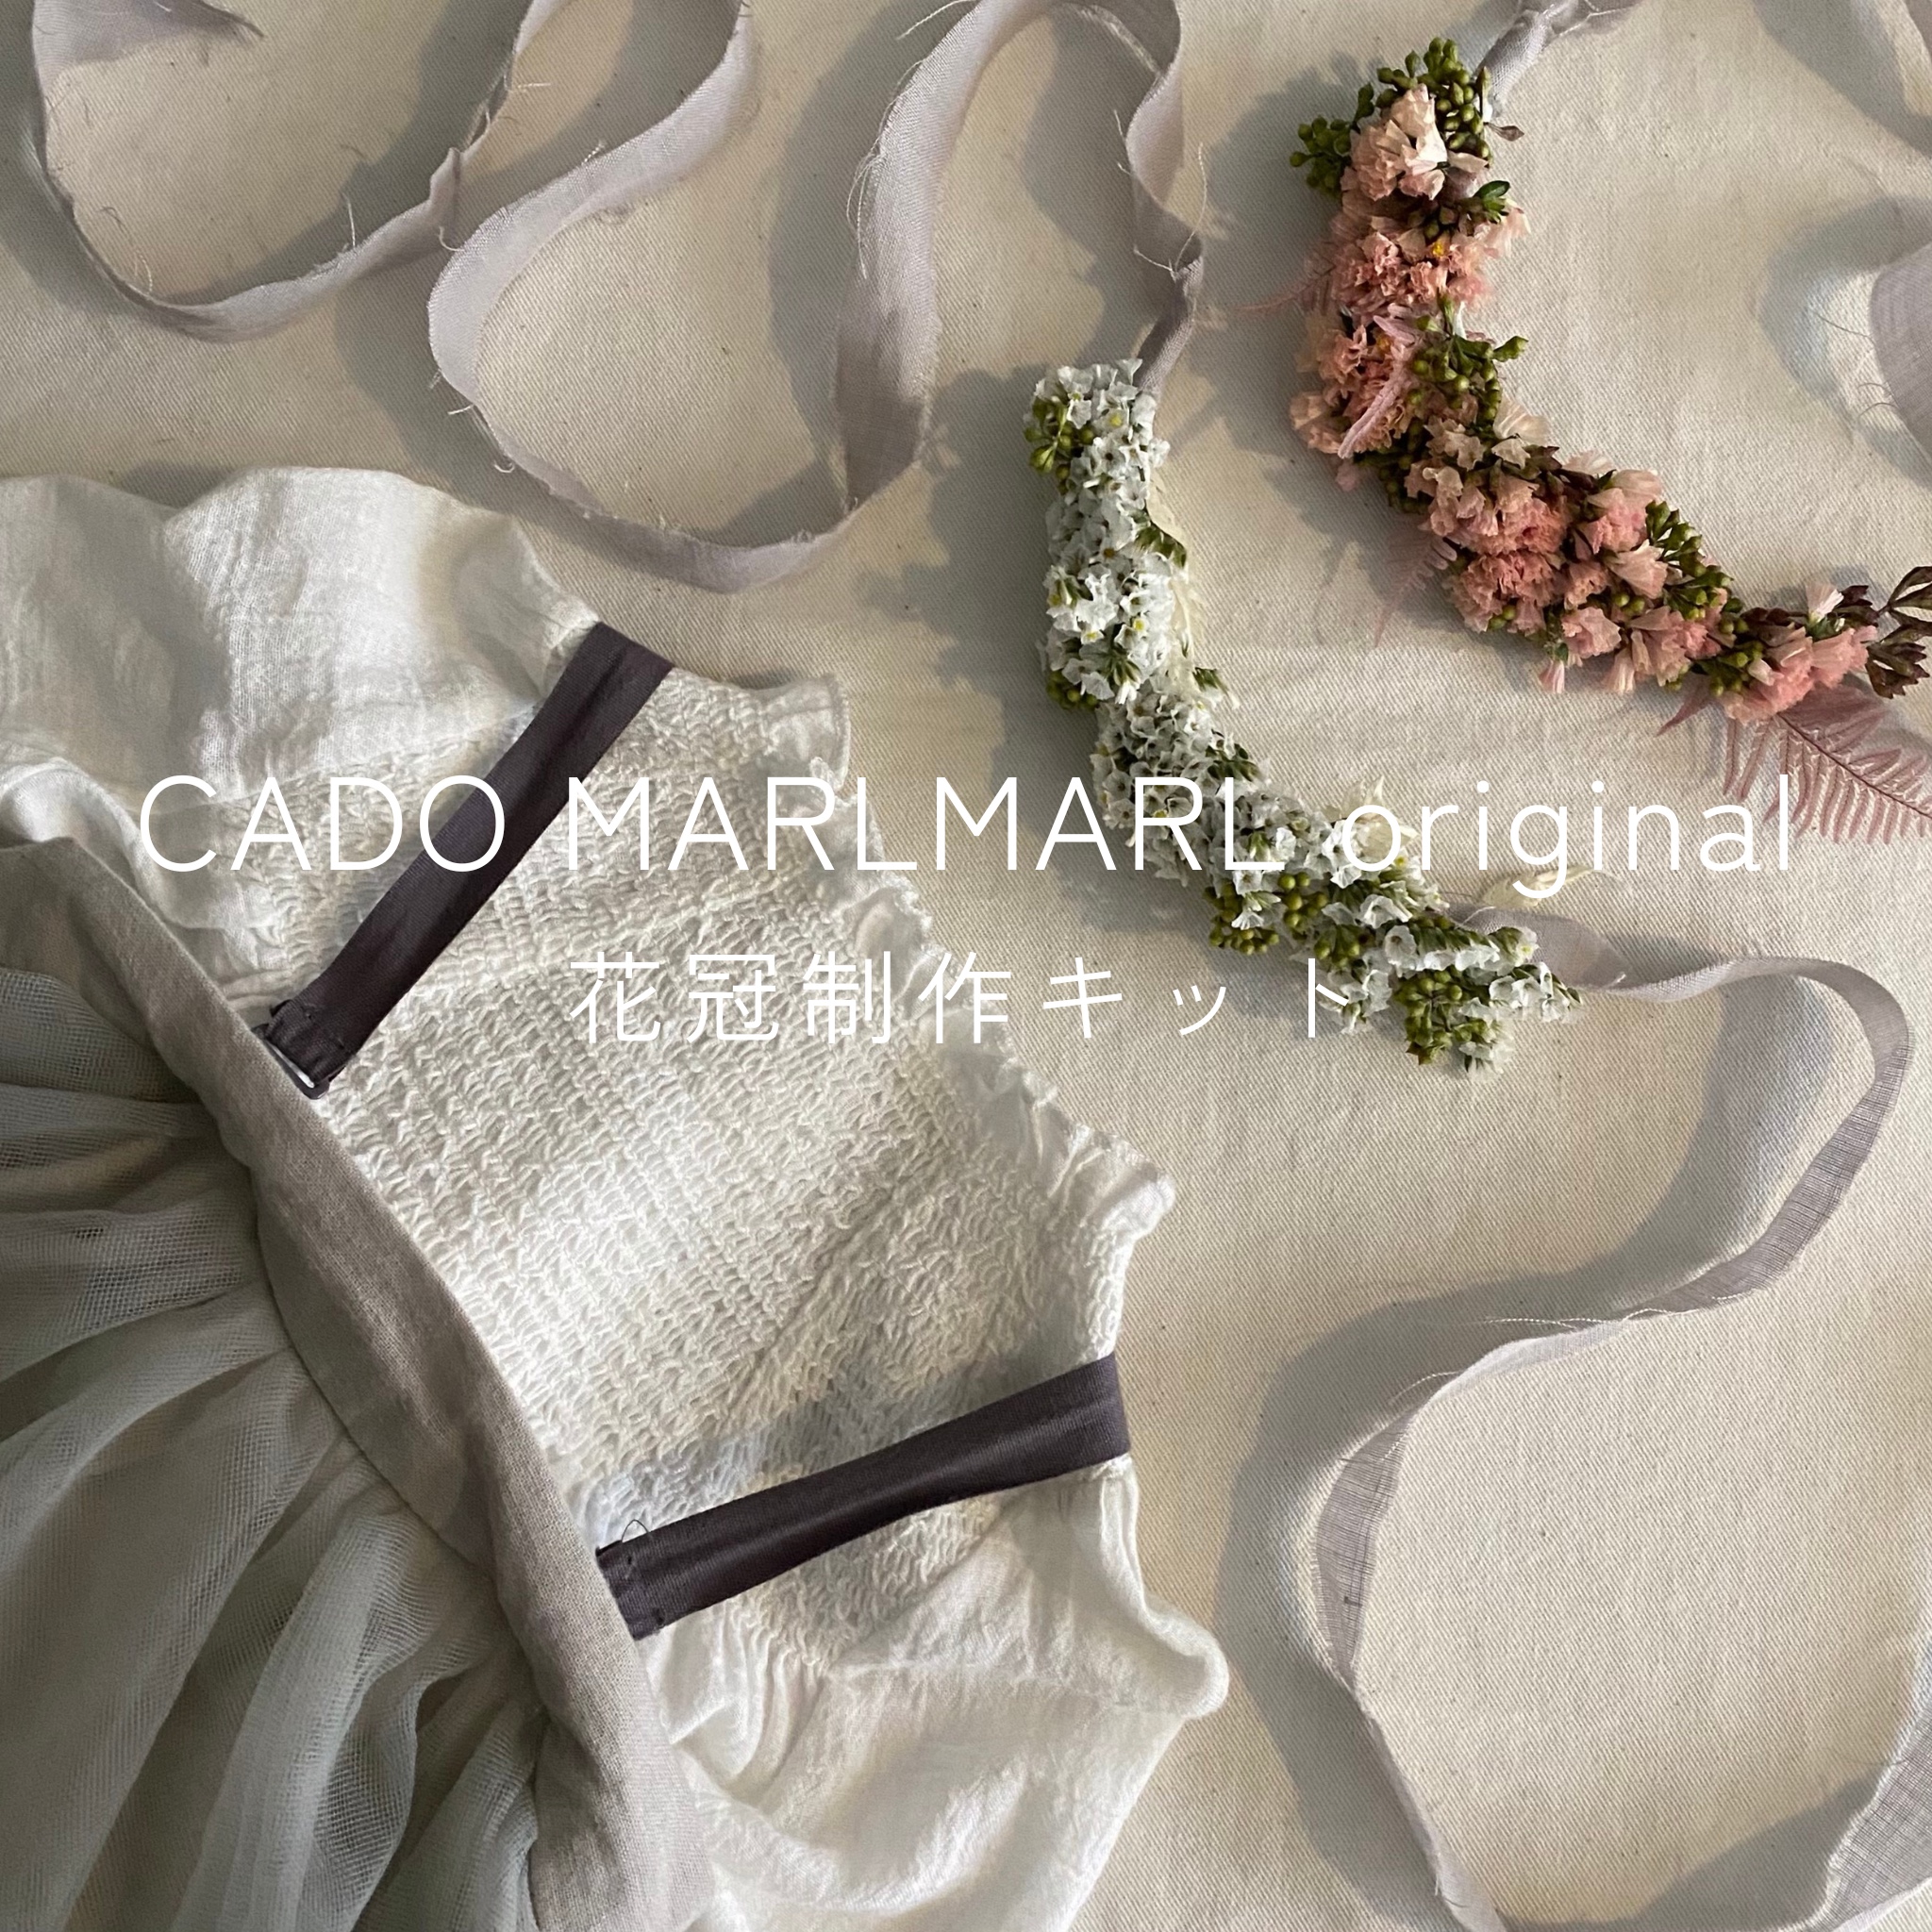 【ご自宅で楽しめる】CADO MARLMARLの花冠制作キット 1.26(THU.)